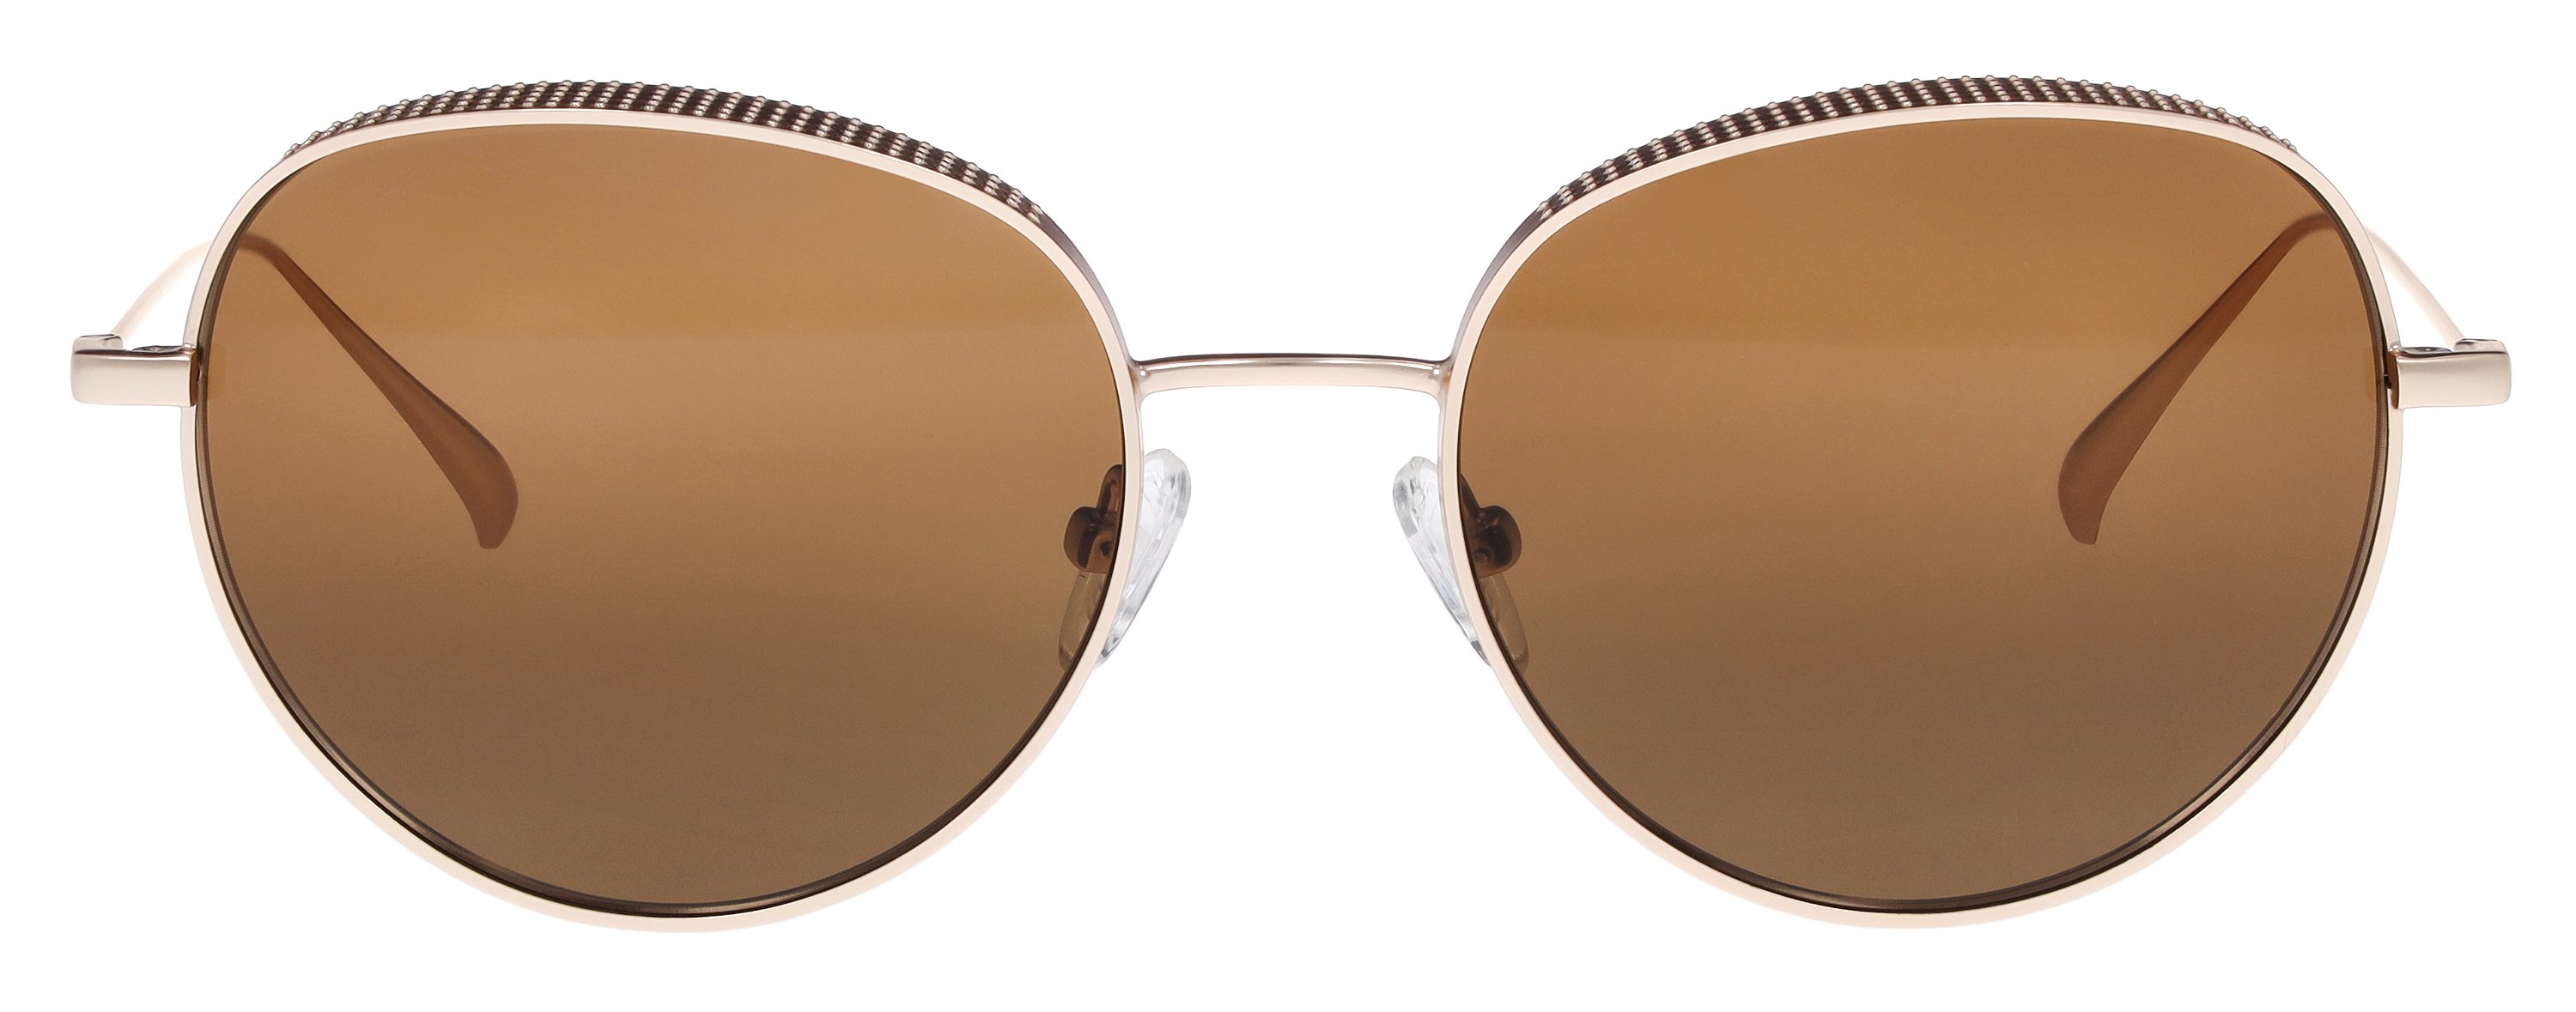 abele optik Sonnenbrille für Damen in bronze 720101